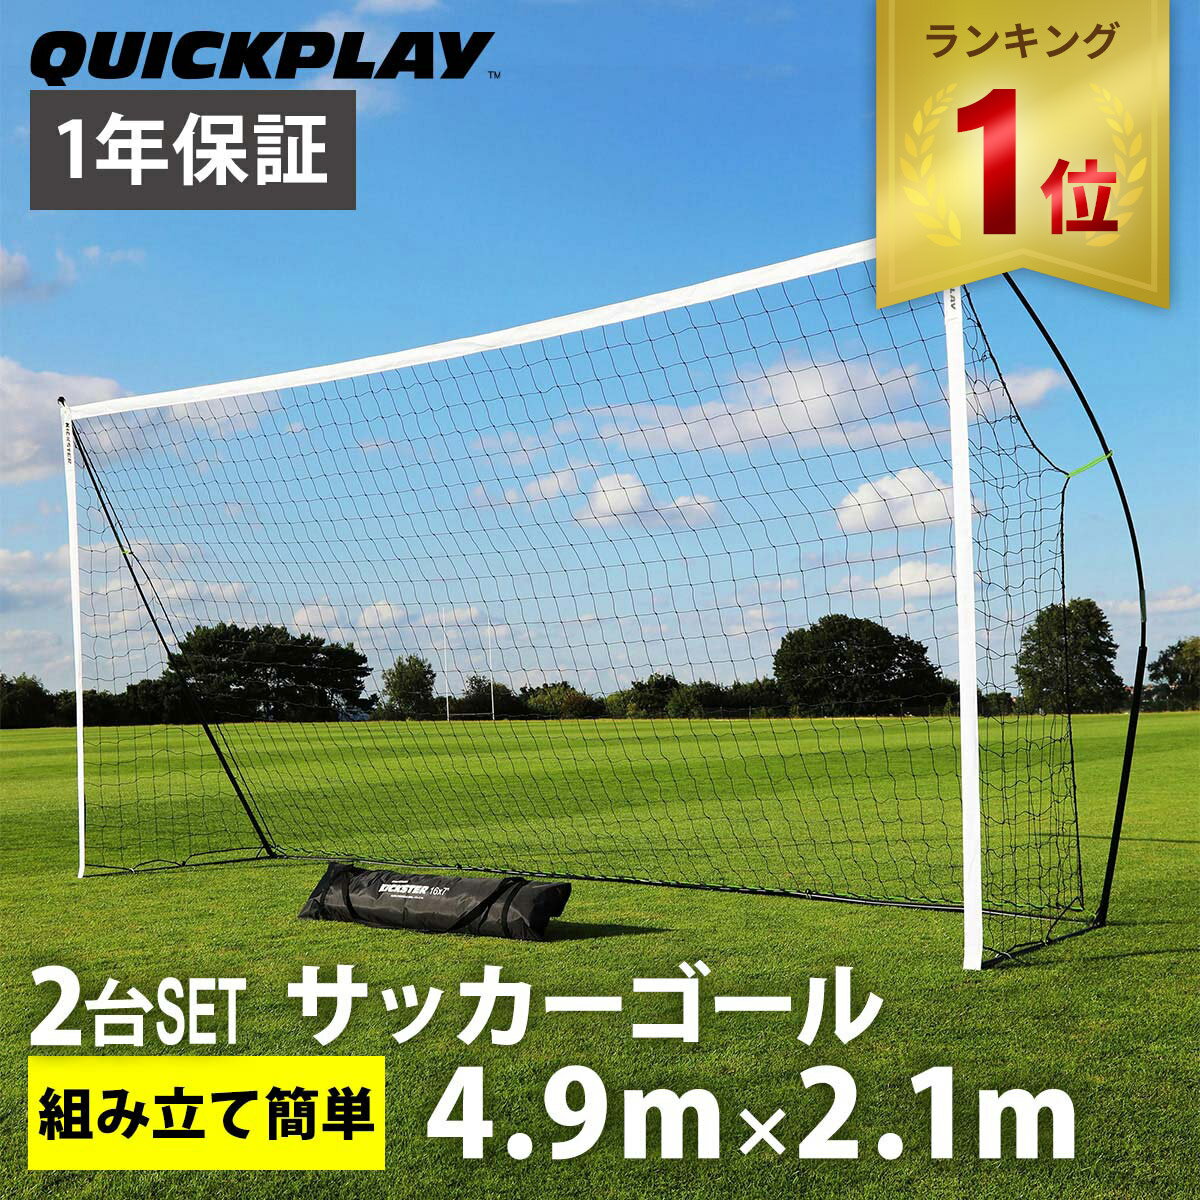 【楽天1位】 クイックプレイ QUICKPLAY キックスター ポータブル サッカーゴール 少年サッカー8人制サイズ 4.9m×2.1m（16×7ft) 2台セット 組立式 練習器具